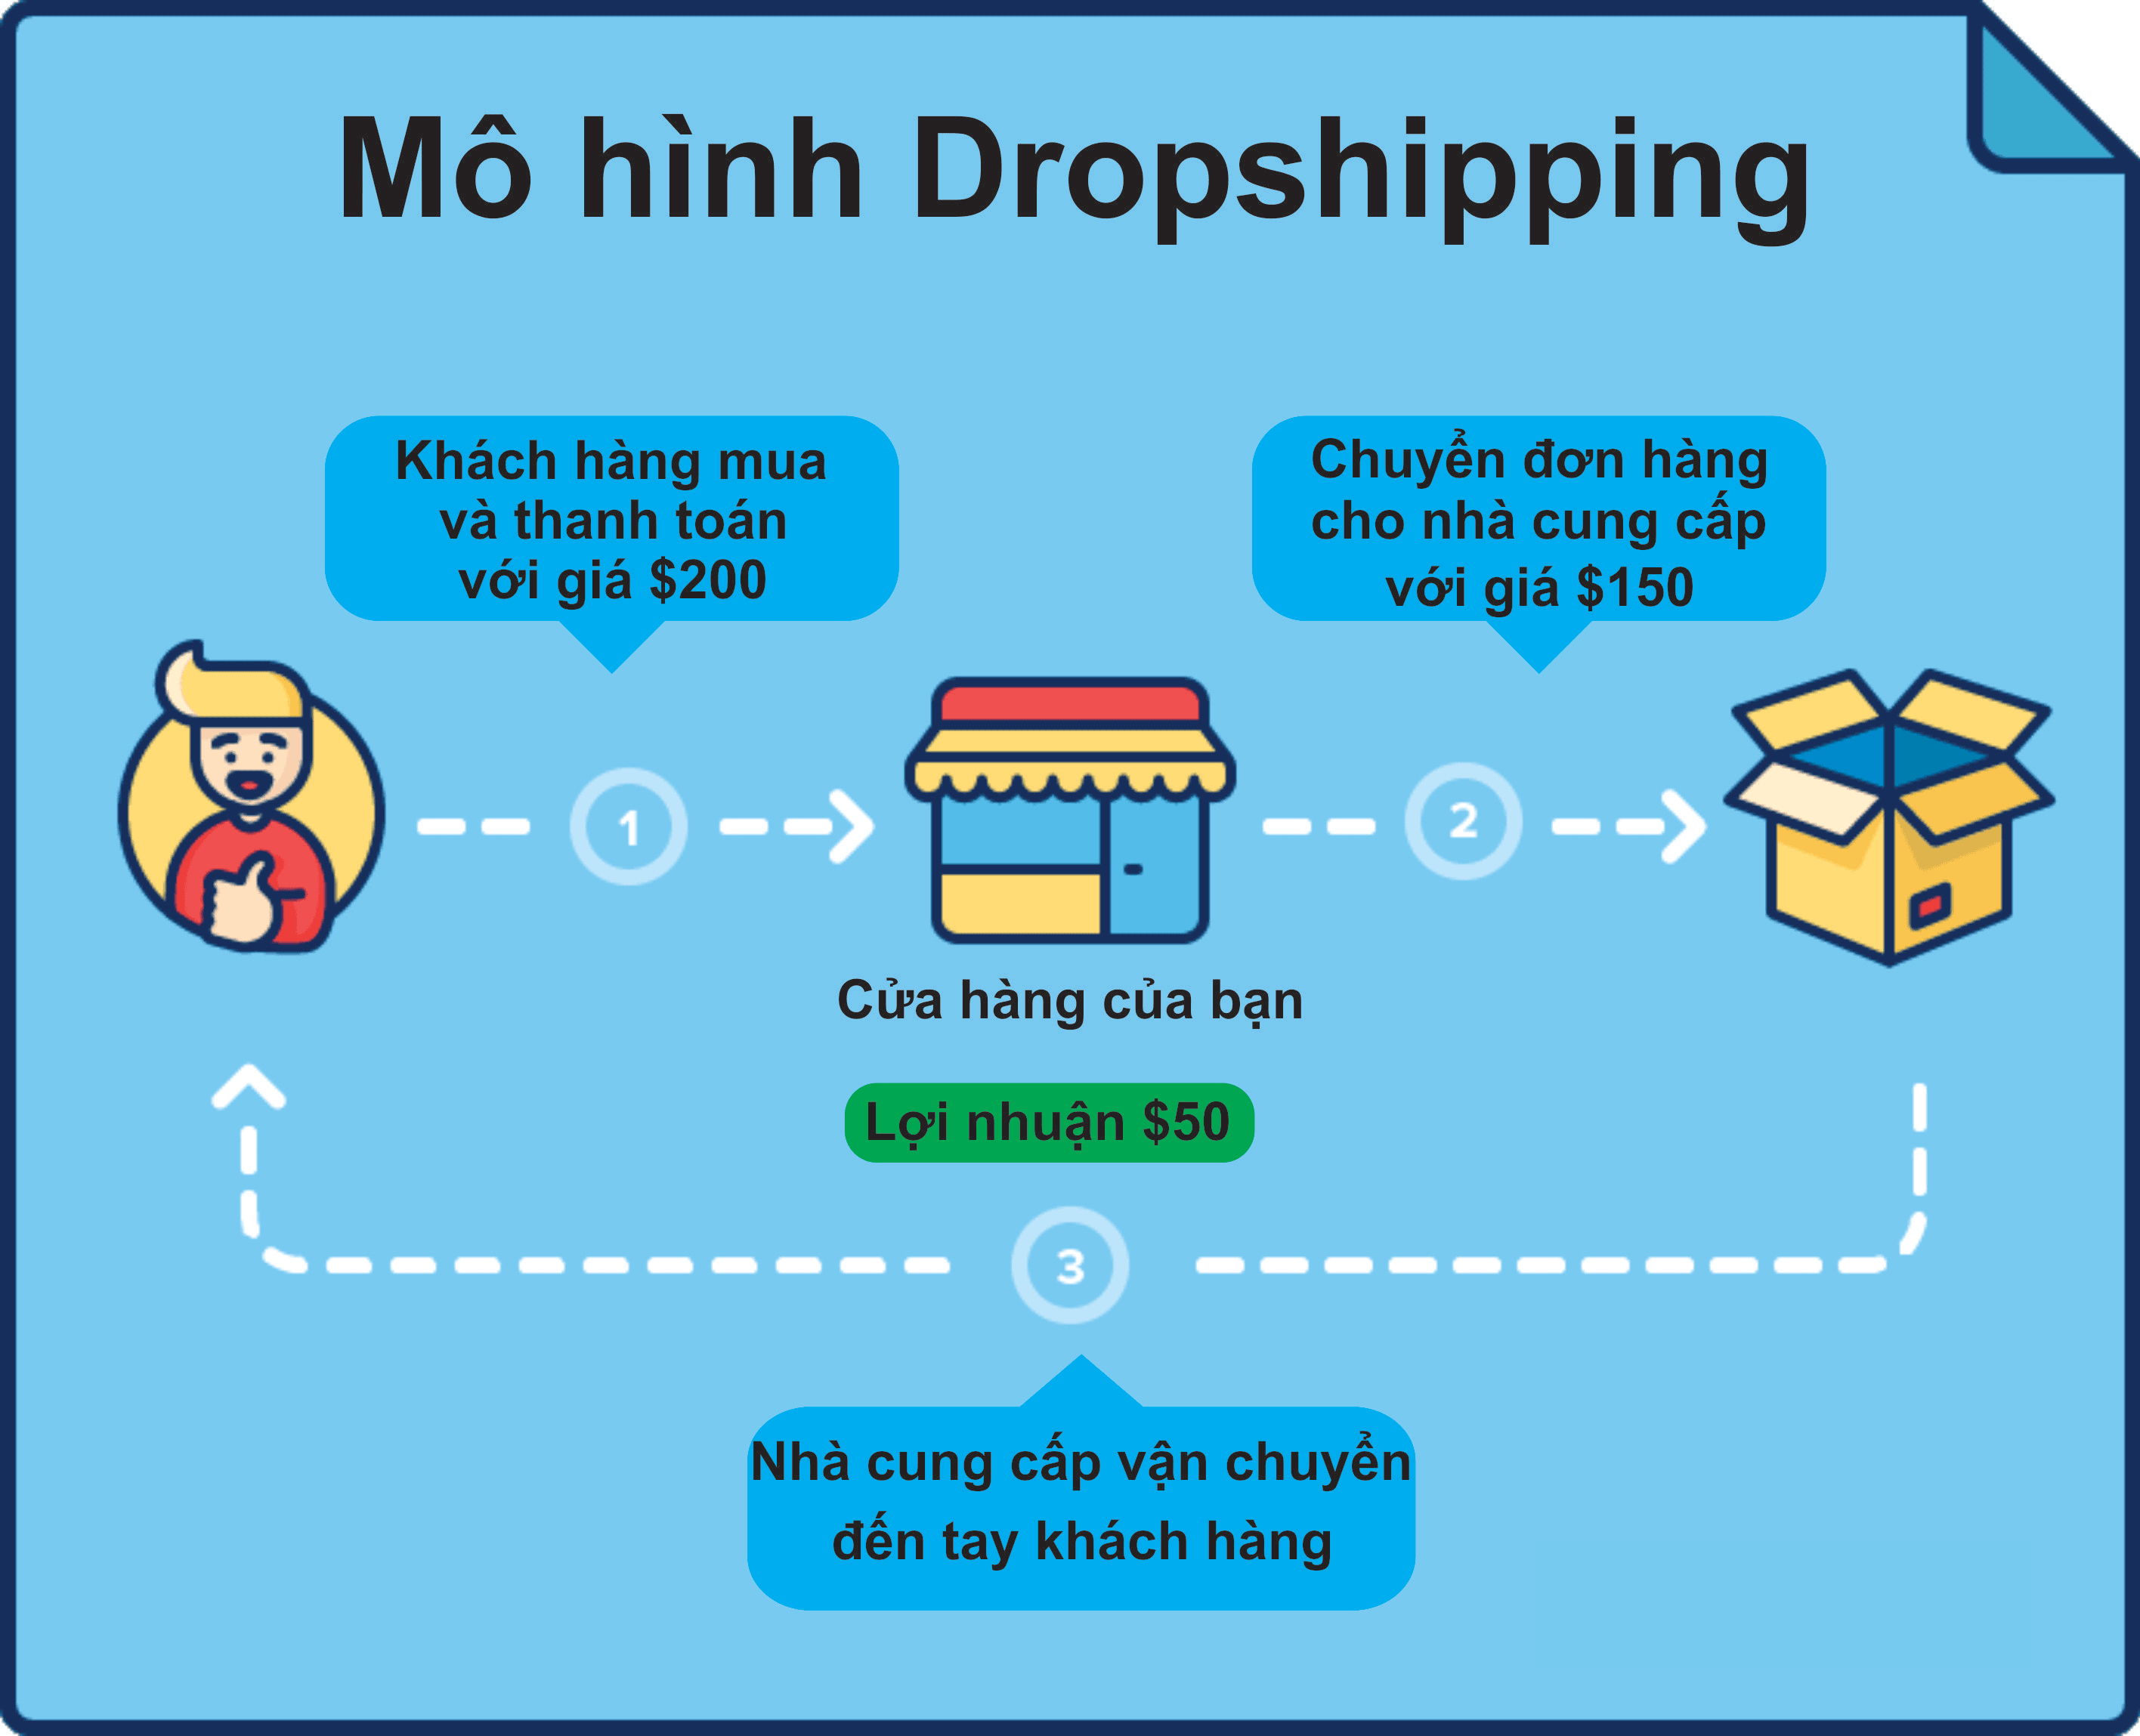 Dropshipping là một hình thức bán lẻ sản phẩm, hàng hóa tới với người tiêu dùng